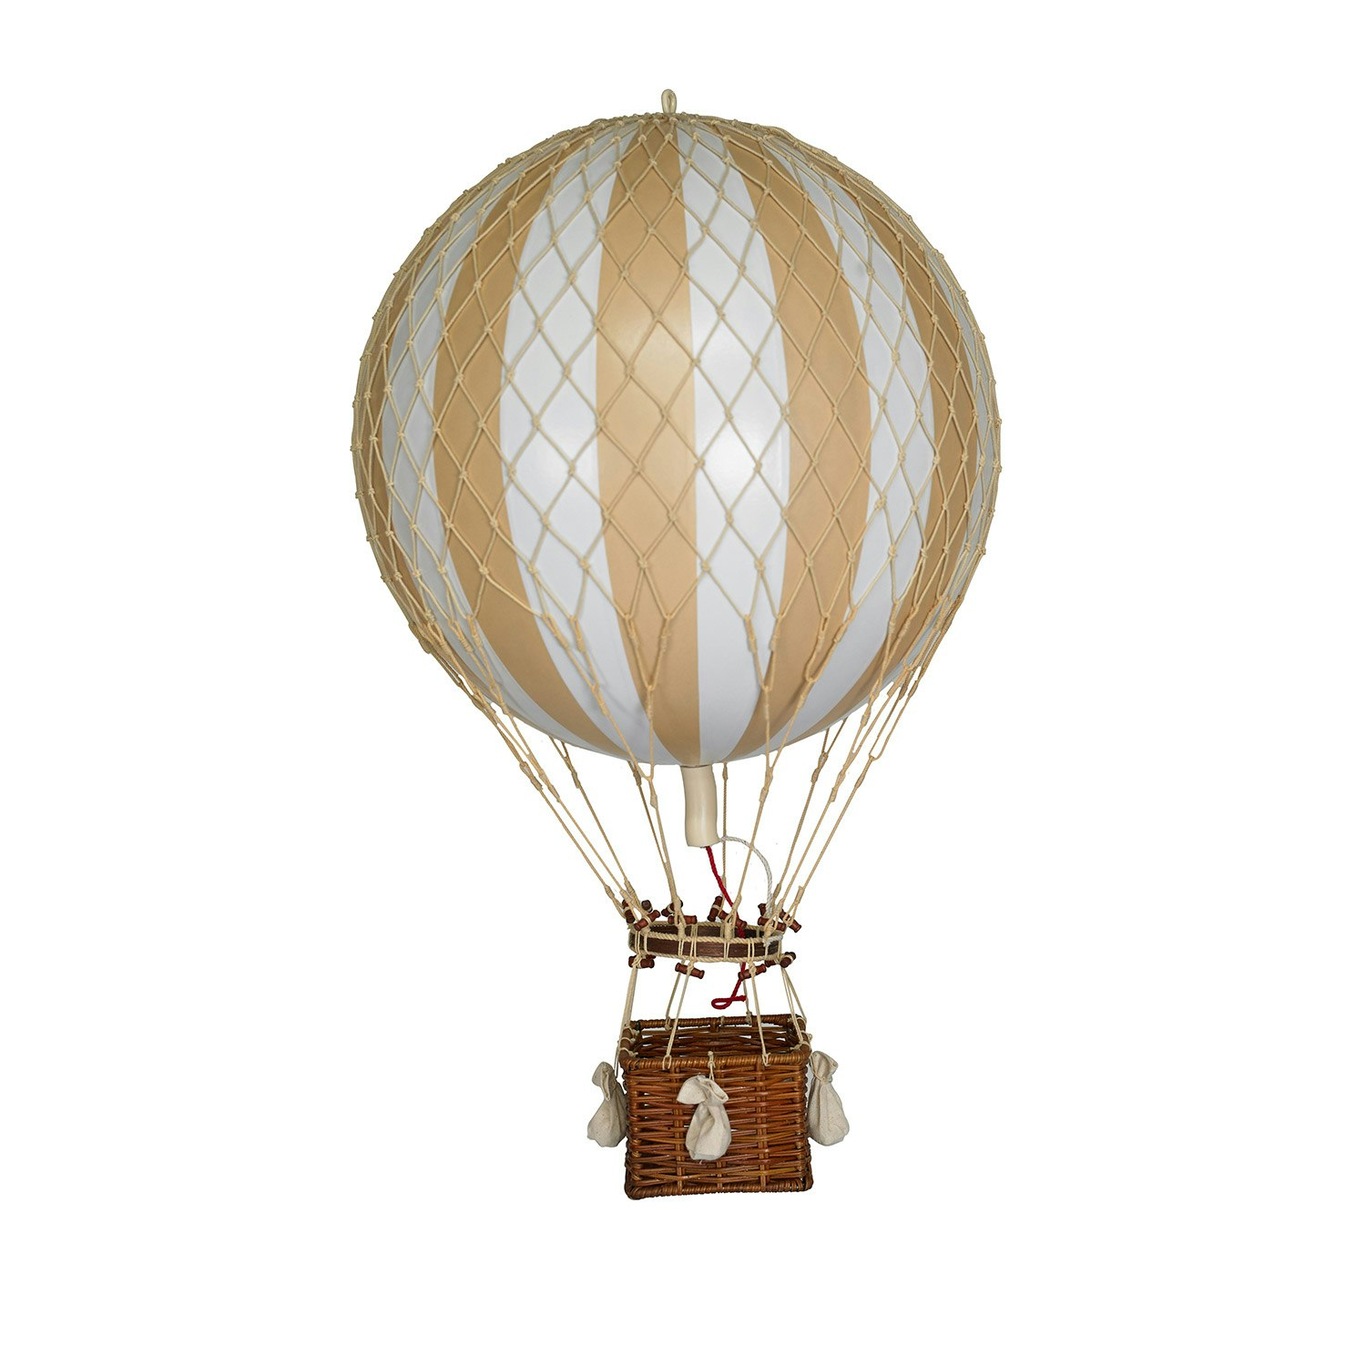 Royal Aero Air Balloon 32x56 cm, White / Ivory